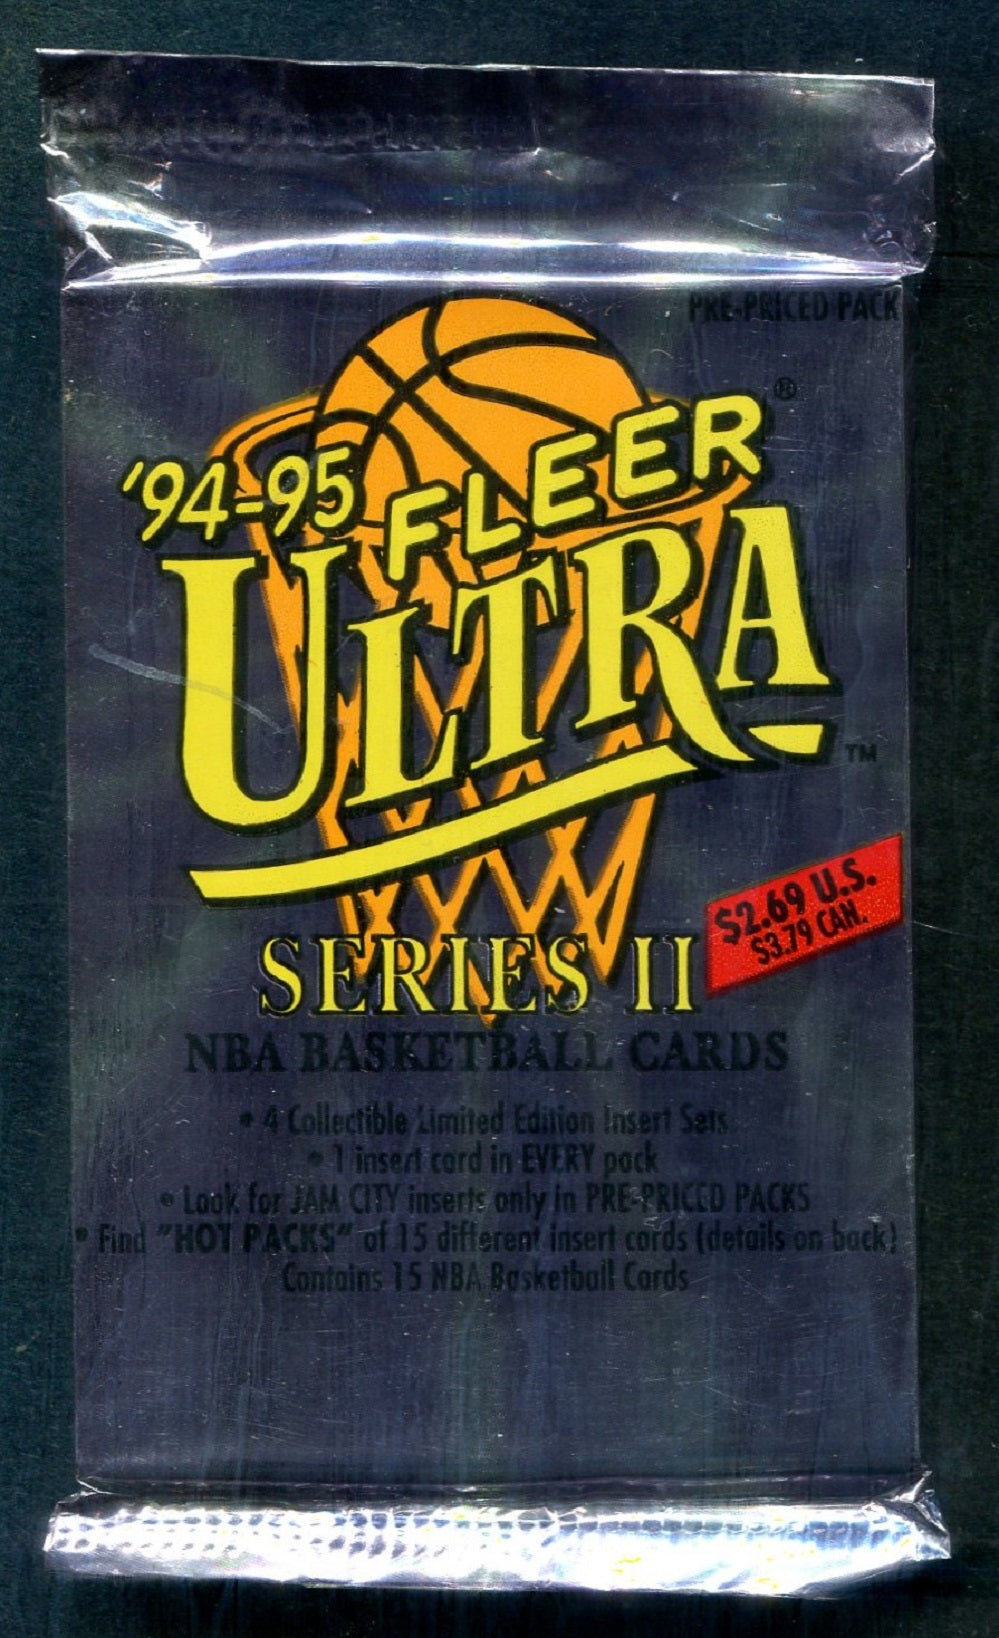 1994/95 Fleer Ultra Basketball Unopened Series 2 Jumbo Pack (Pre-Priced)